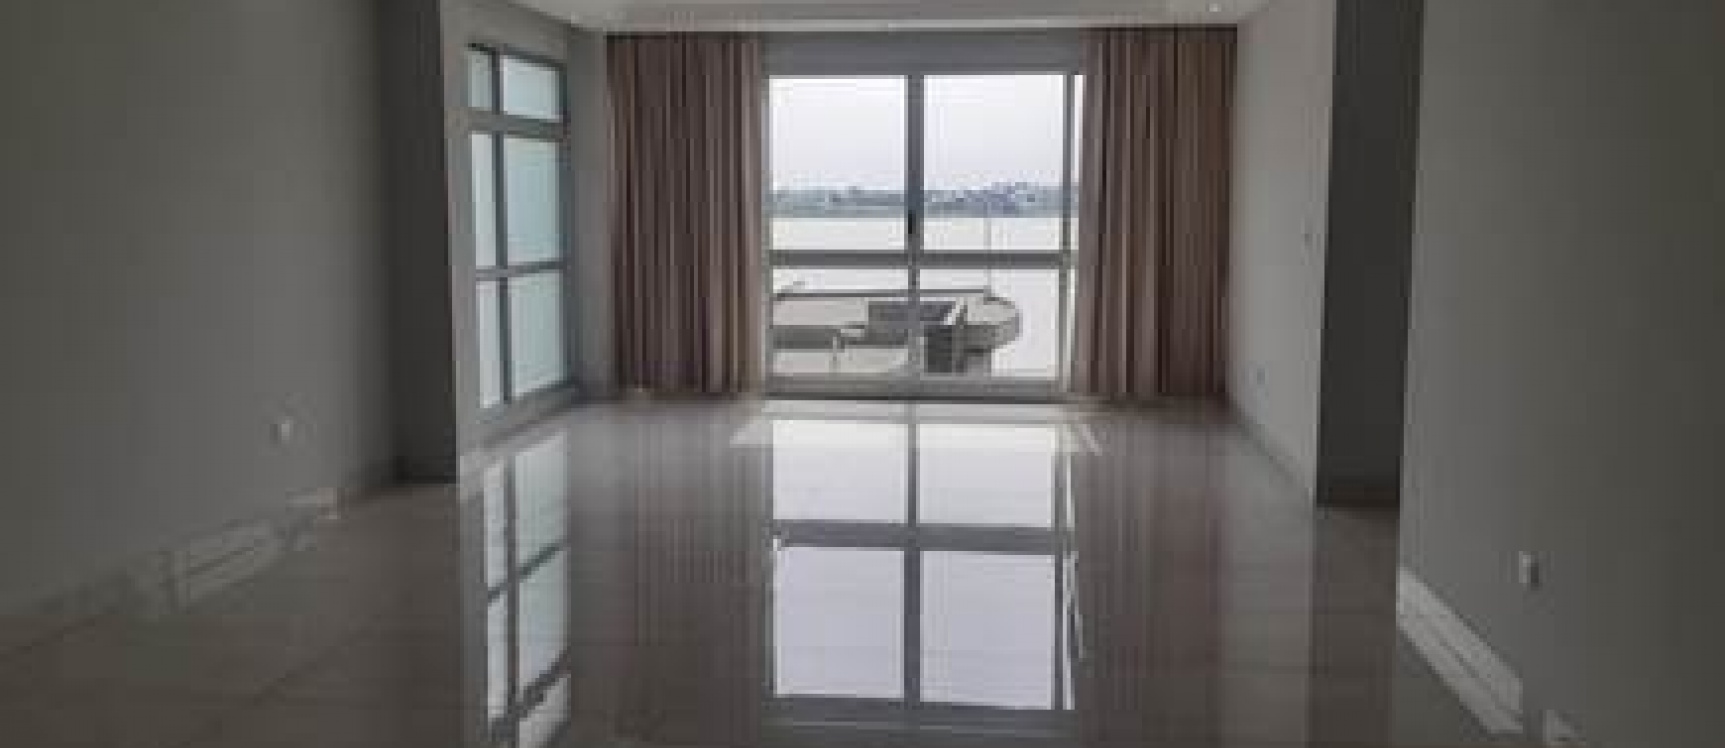 GeoBienes - Departamento de 3 dormitorios en venta en la Urbanización Velero del Río - Plusvalia Guayaquil Casas de venta y alquiler Inmobiliaria Ecuador